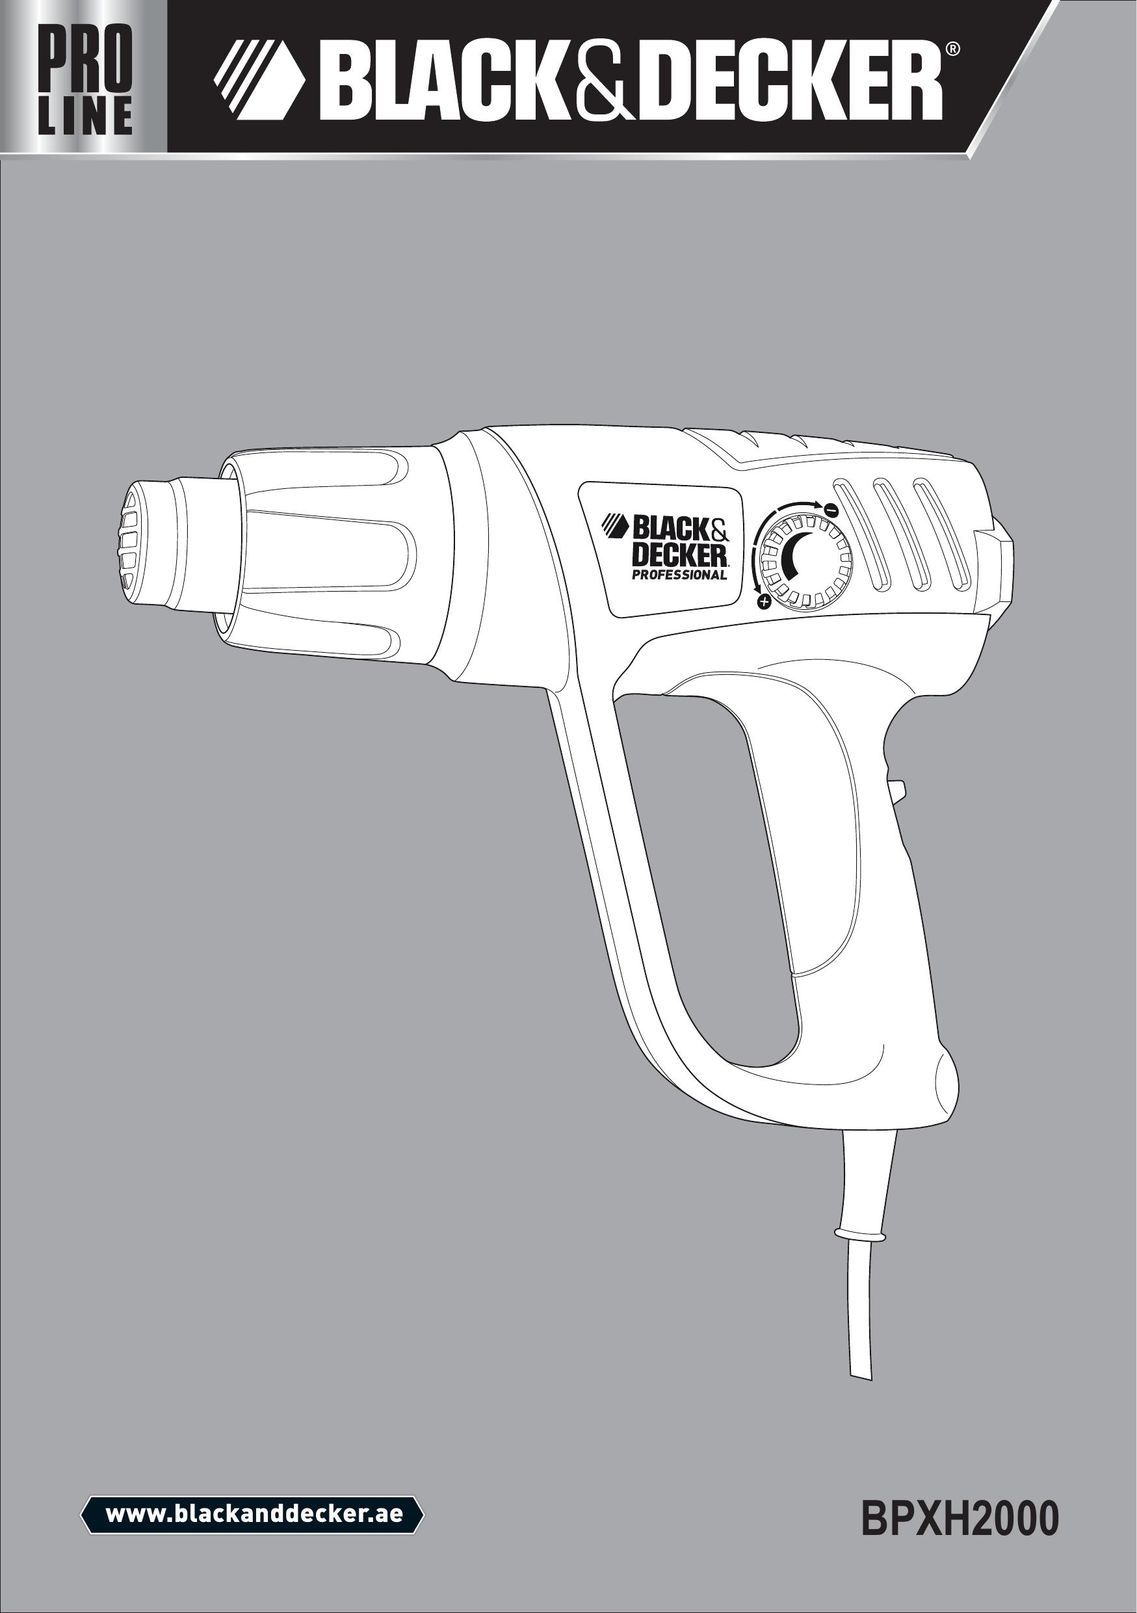 Black & Decker BPXH2000 Heat Gun User Manual